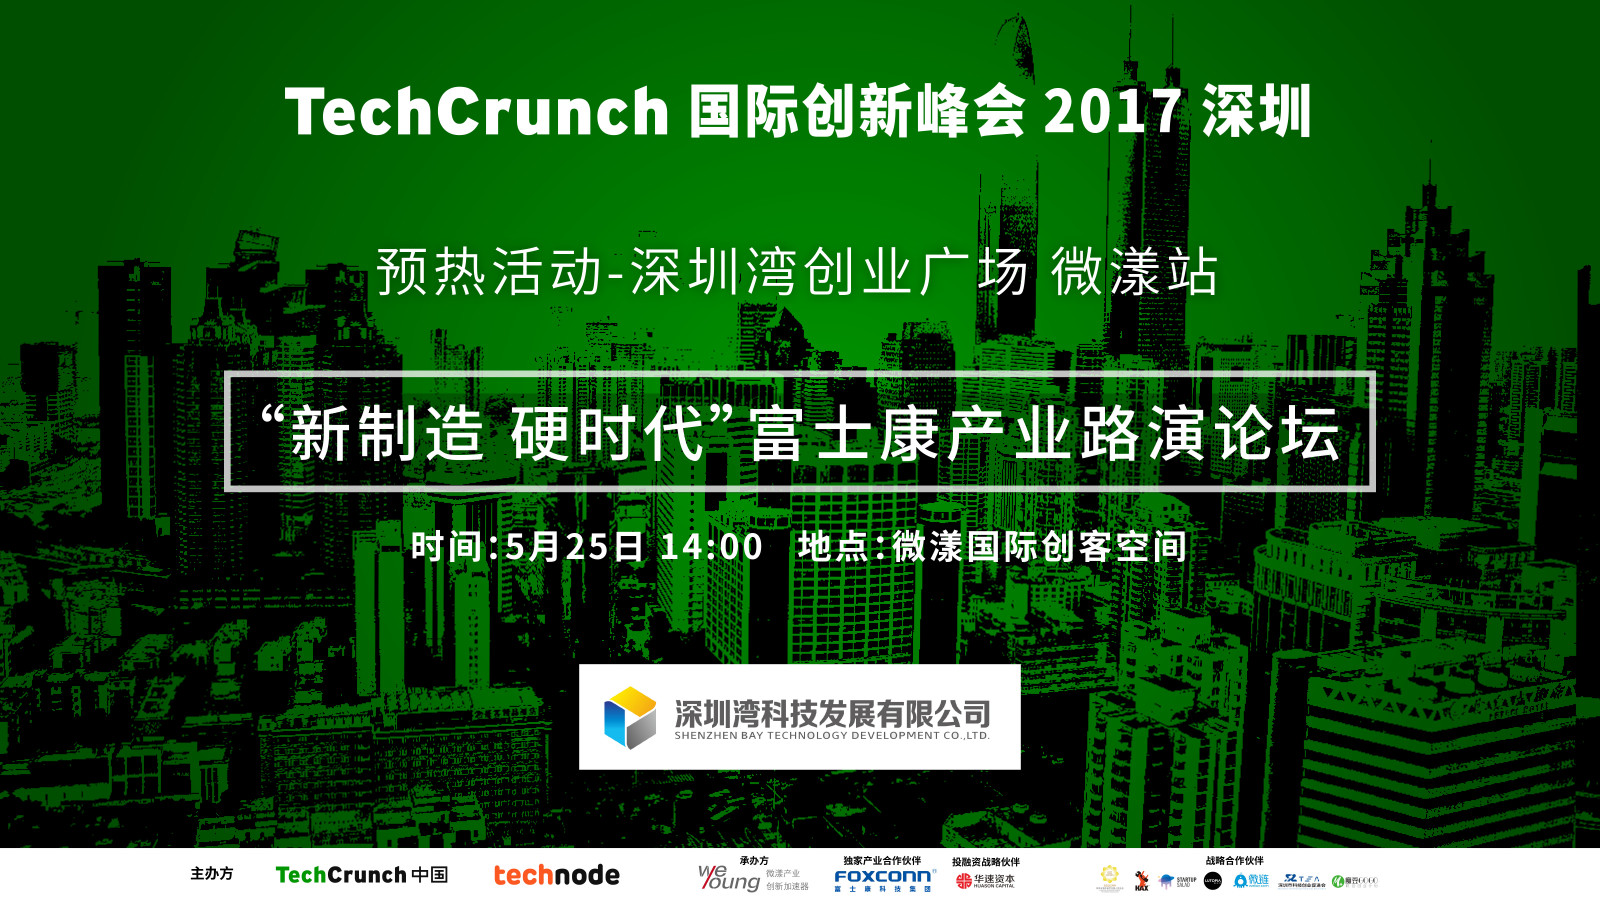 【视频】TechCrunch中国2017微漾站预热活动回顾——“新制造硬时代”富士康产业论坛路演